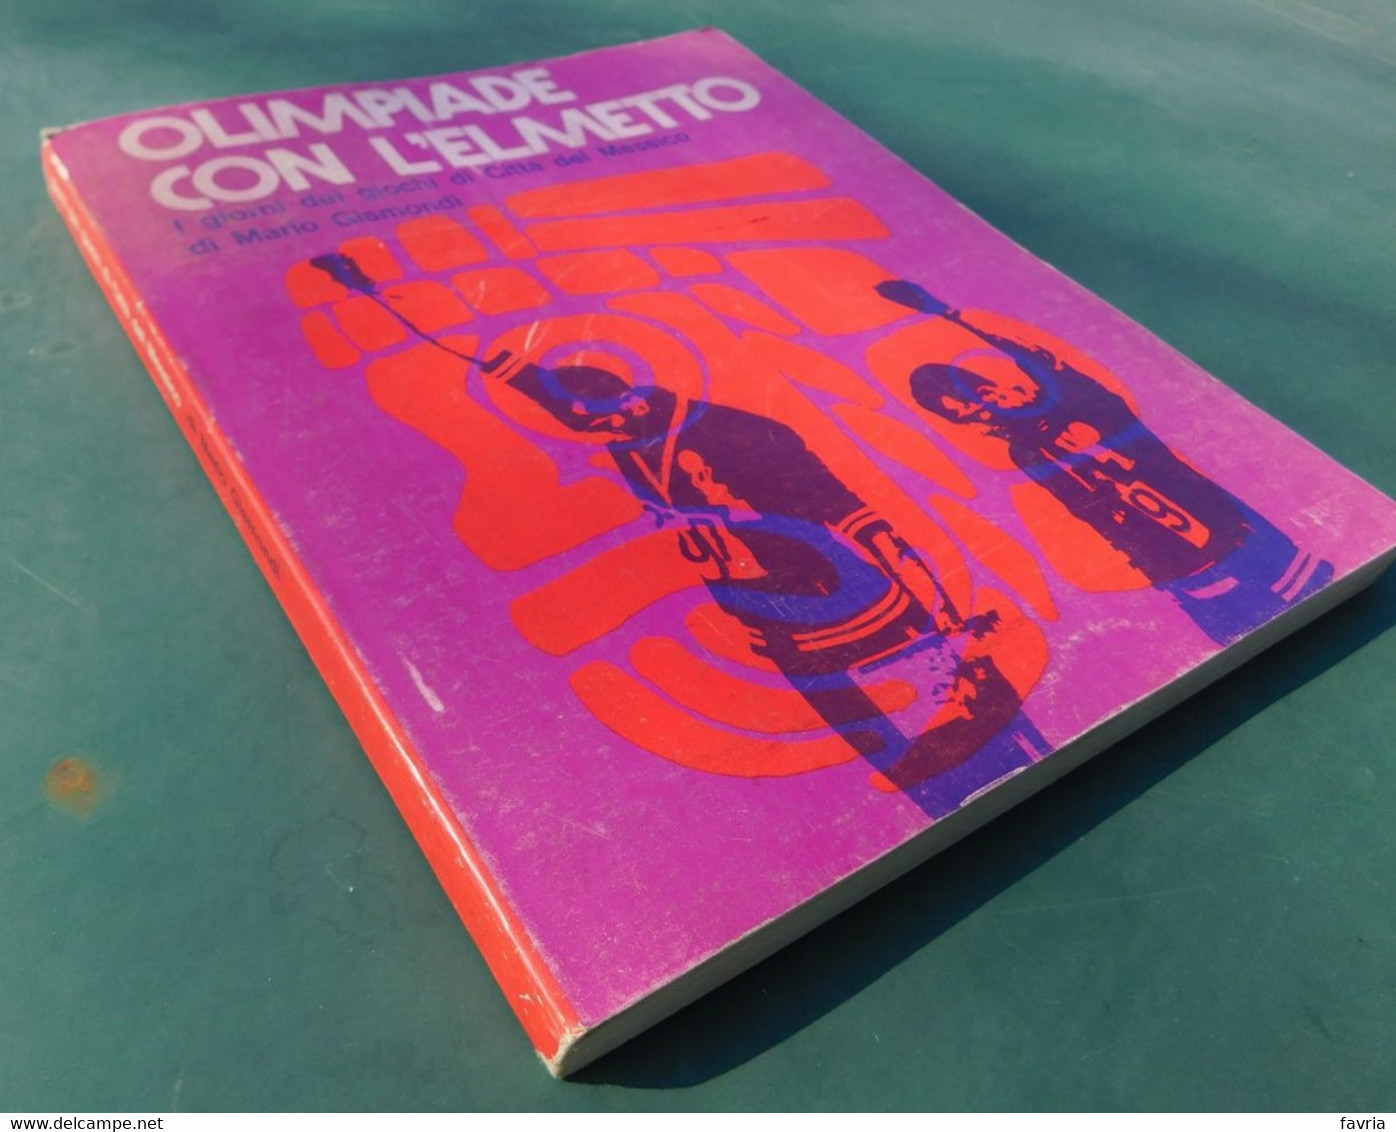 OLIMPIADE CON L'ELMETTO ( I Giorni Dei Giochi Di Città Del Messico) - Di Mario Gismondi - Ed. Gisca,1969 - Books